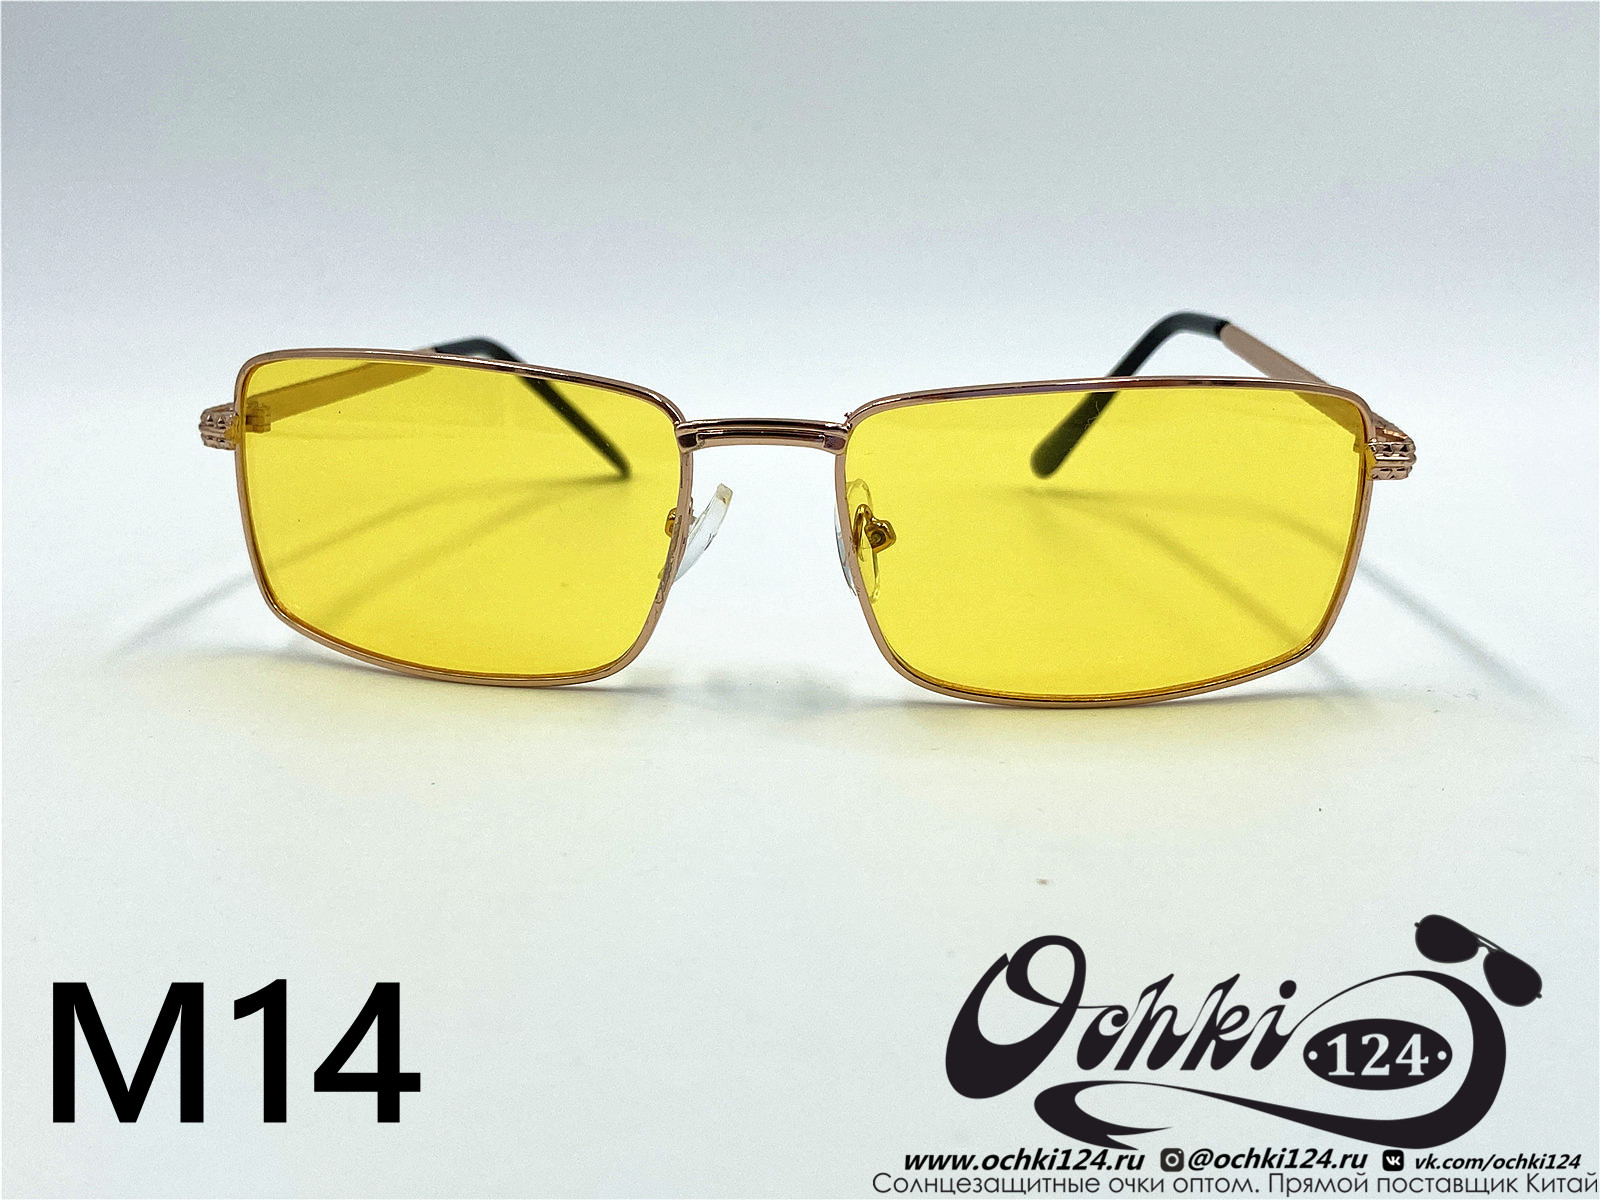  Солнцезащитные очки картинка 2022 Мужские Узкие и длинные KaiFeng M14-8 